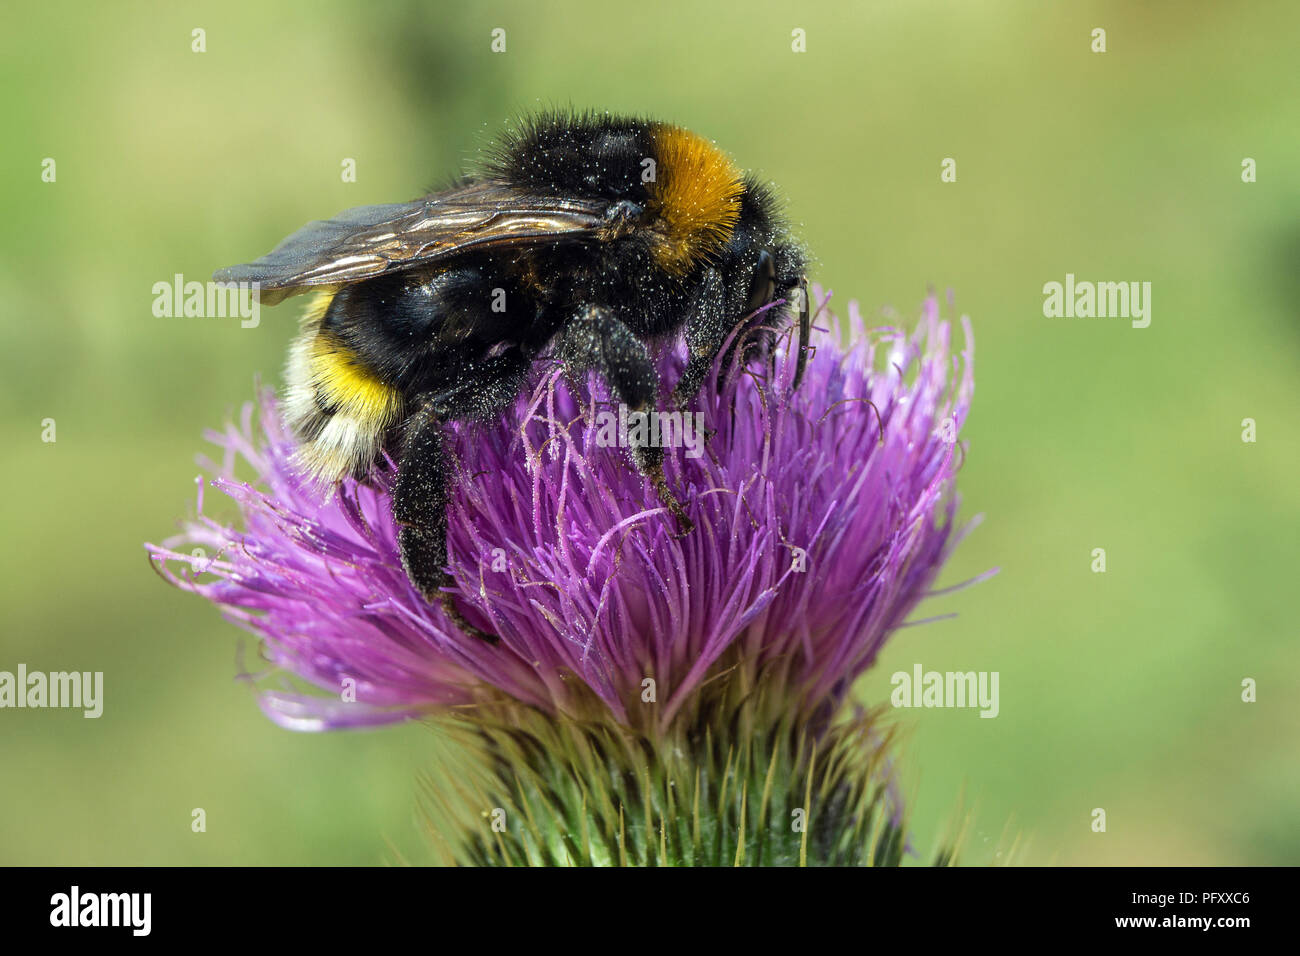 De abejorros (Bombus) se asienta en el cardo en flor (Carduus), Dossenheim, Baden-Württemberg, Alemania Foto de stock